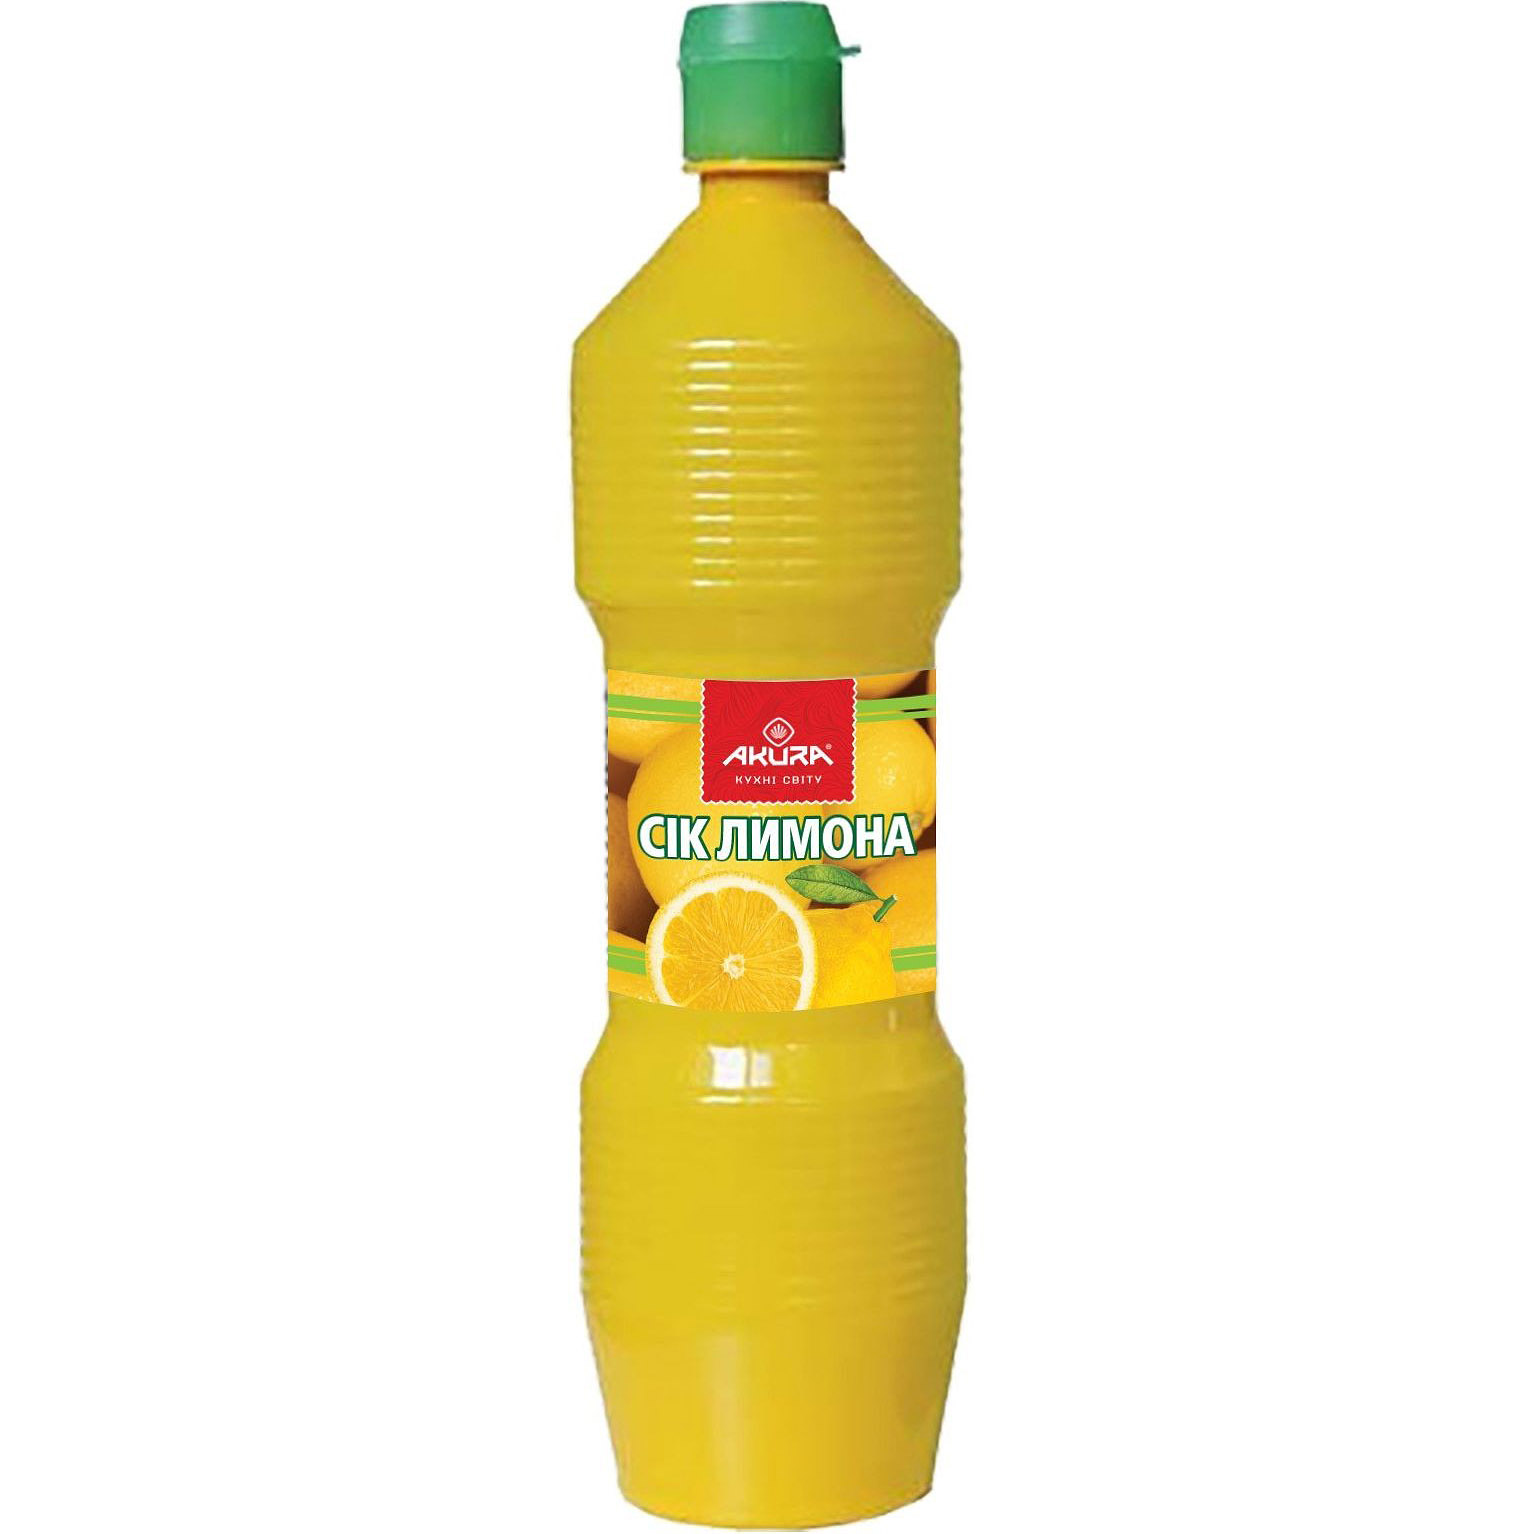 Сік лимона Akura концентрований 380 мл - фото 1